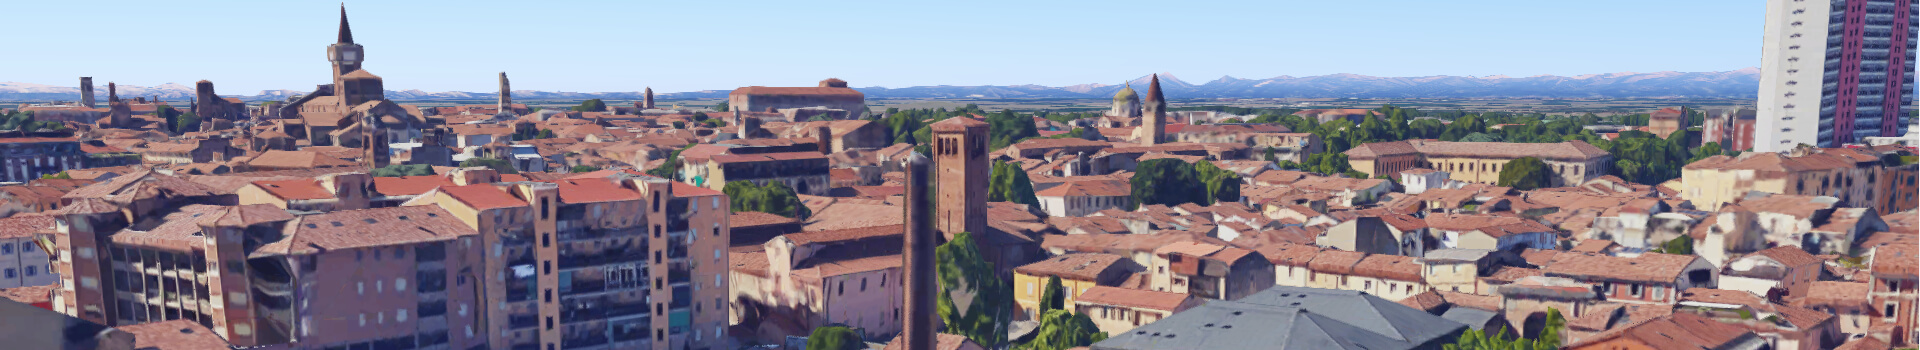 Convegno internazionale “La Cattedrale di Piacenza e la civiltà medievale” dal 20 al 24 settembre 2022